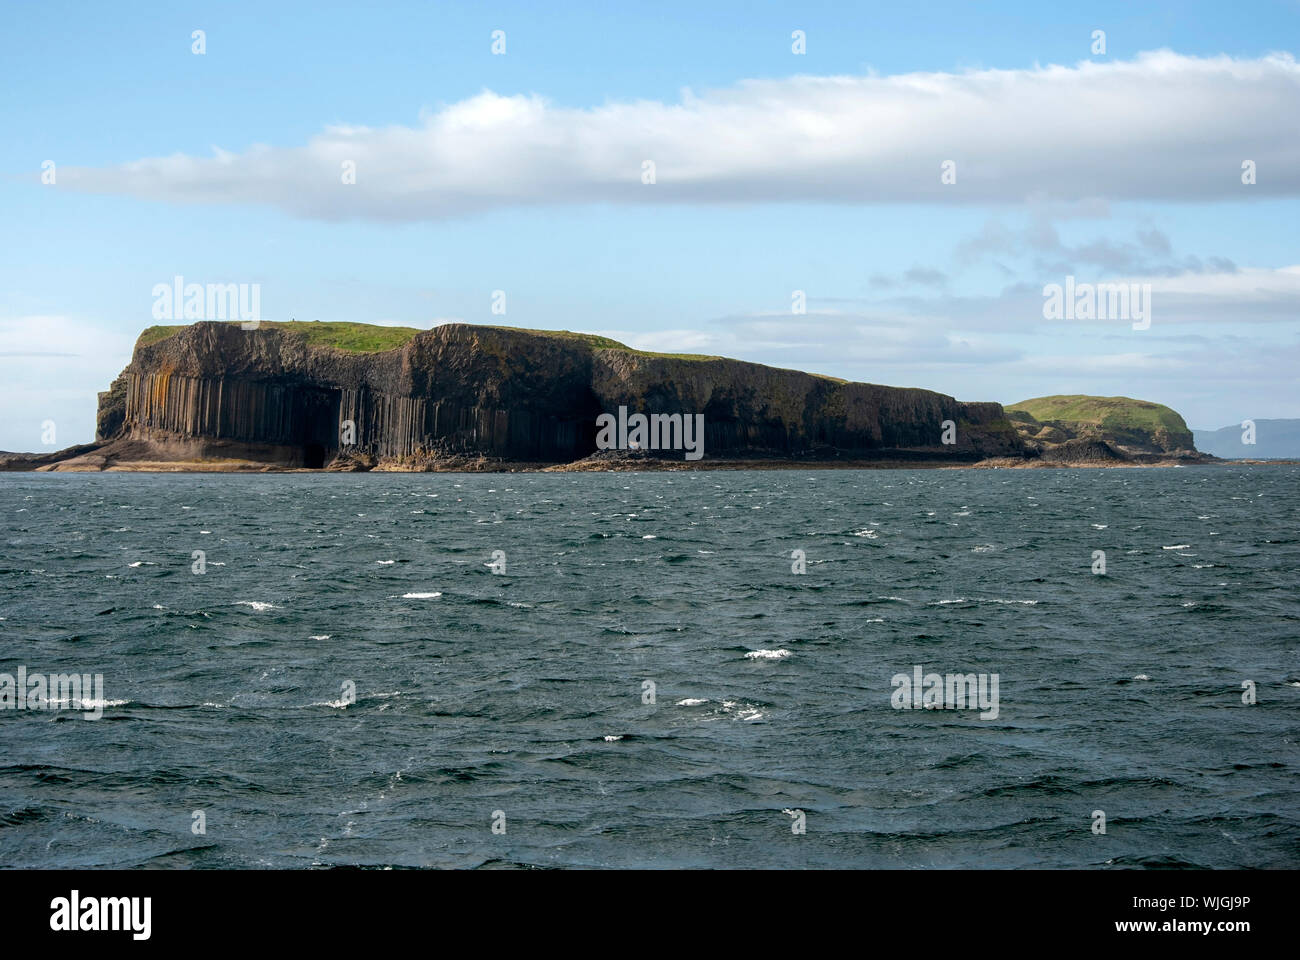 Il telecomando e disabitata isola scozzese di Staffa Off The Isle of Mull Scotland Regno Unito paesaggio seascape 6 6 facciata basalto esagonale rock Foto Stock